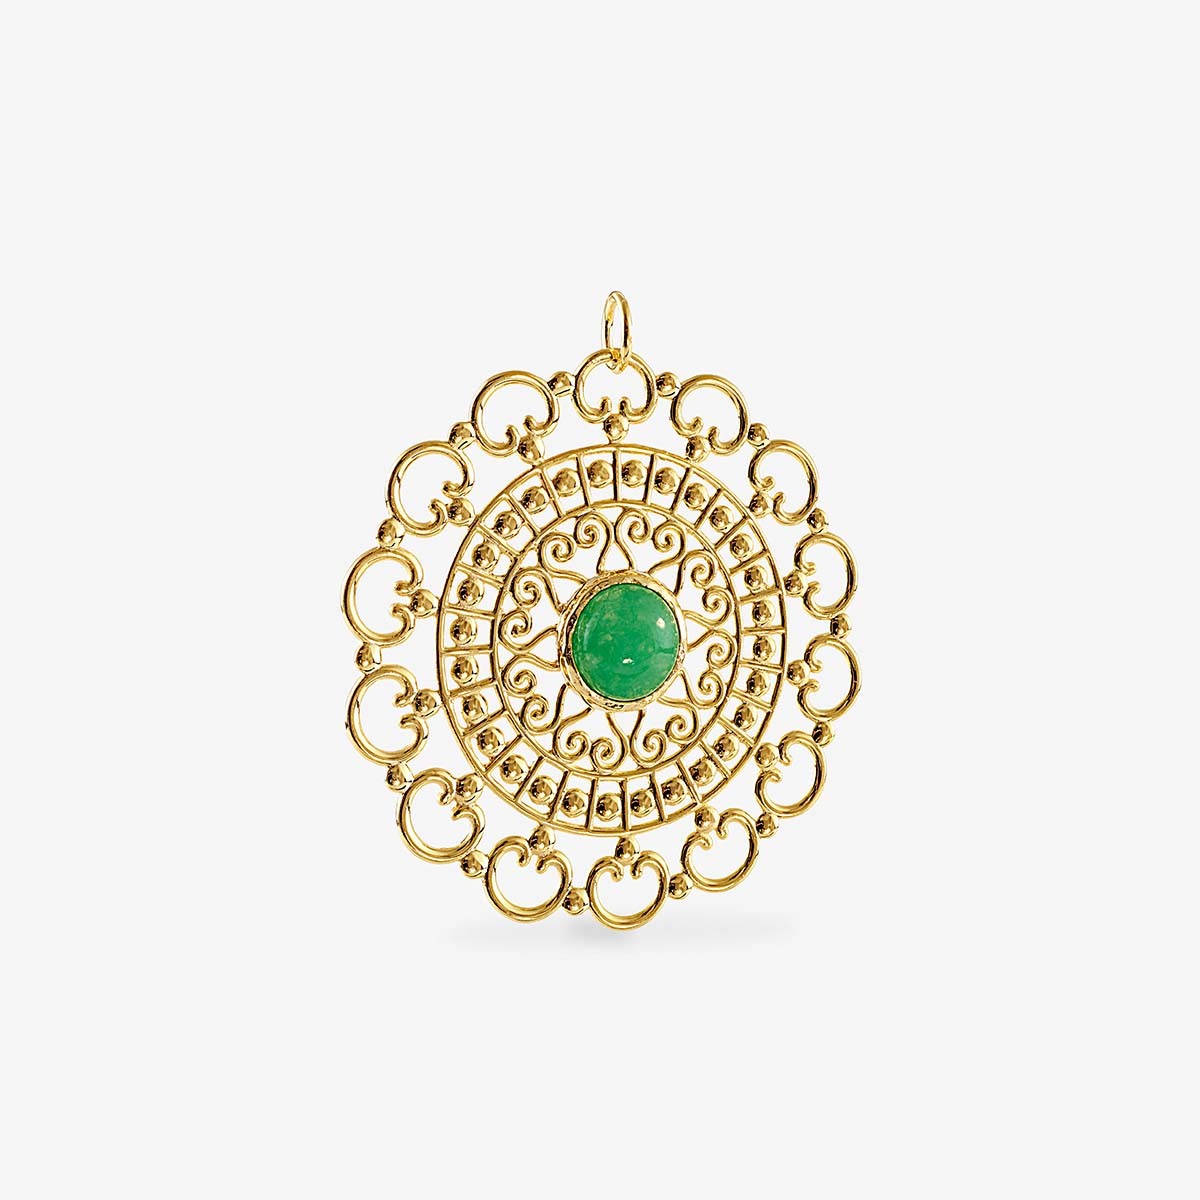 Emerald statement pendant - Kettenanhänger - 18k vergoldet